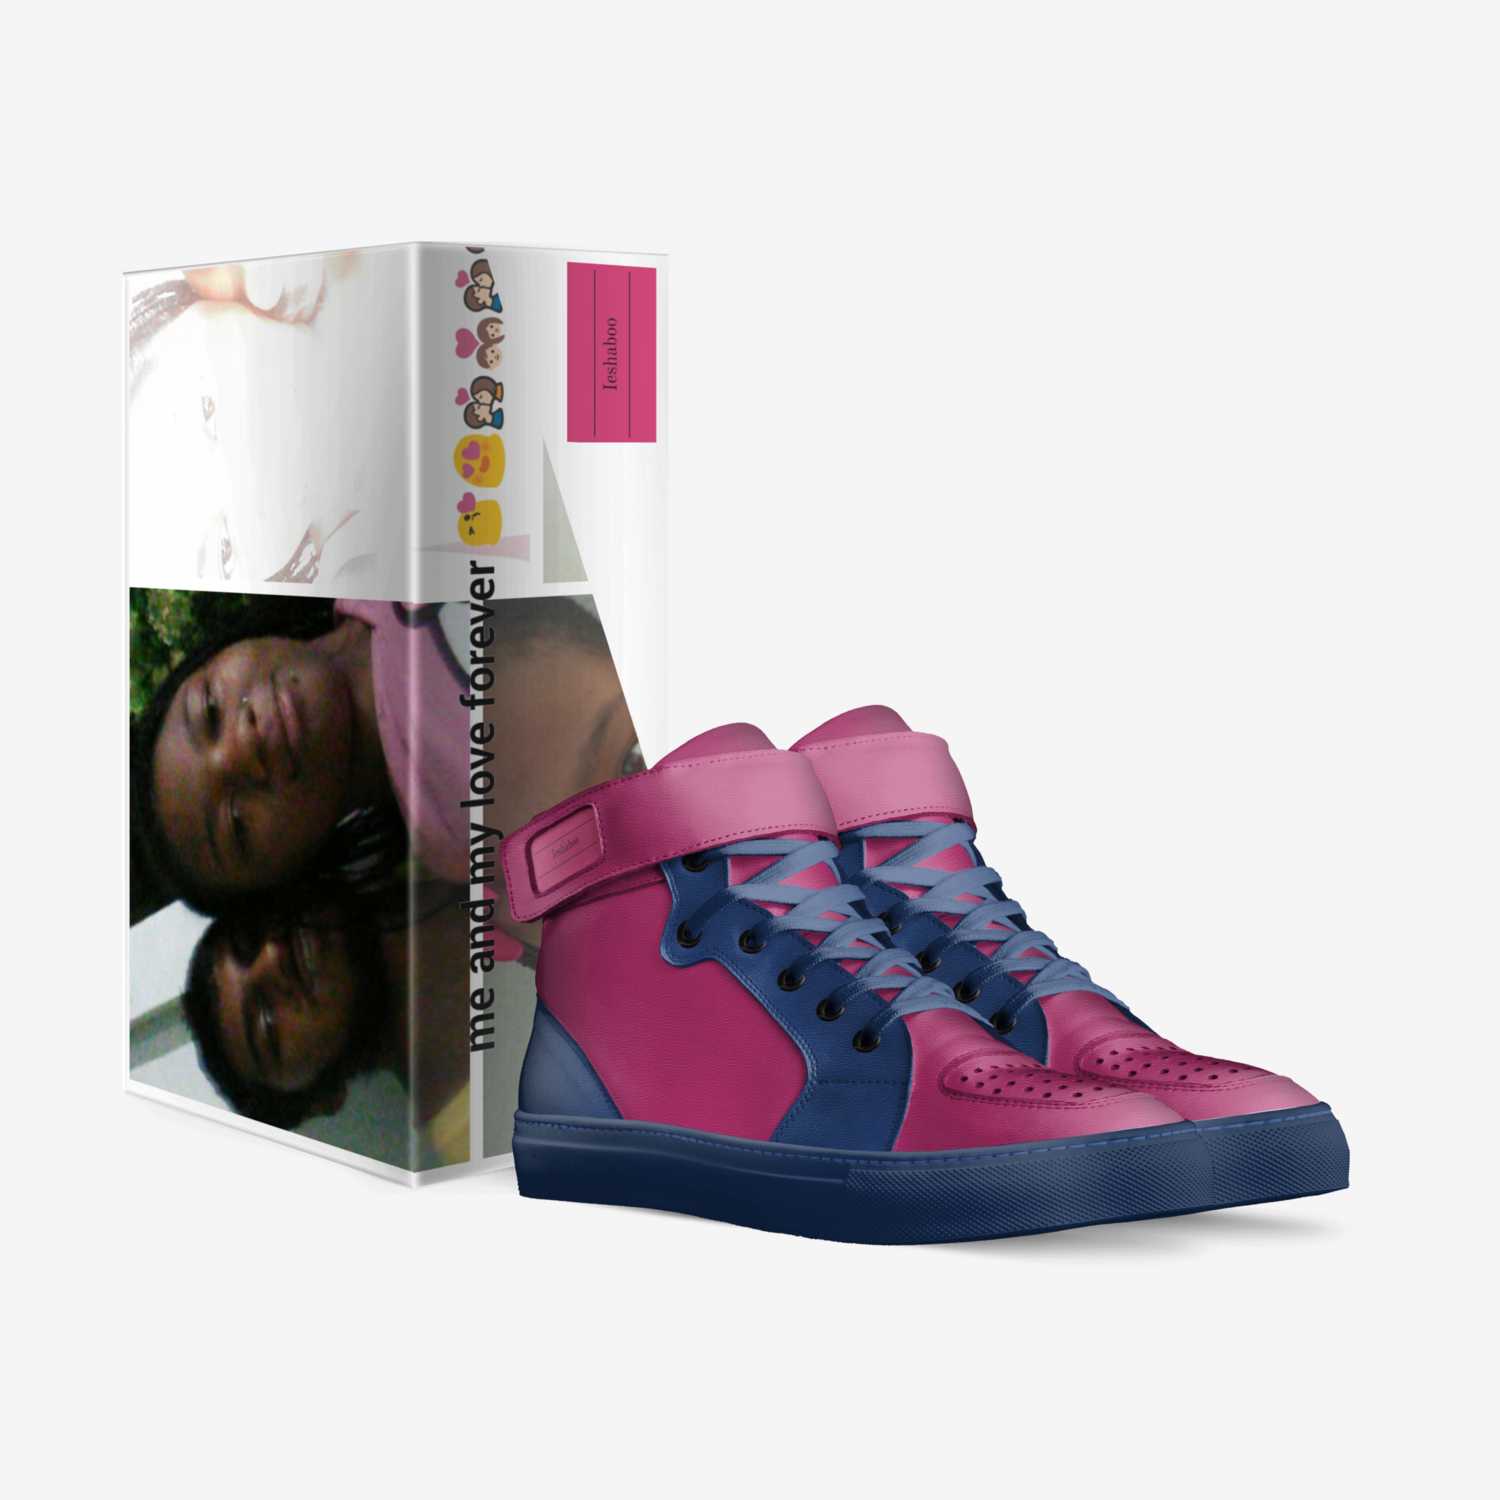 Ieshaboo custom made in Italy shoes by Iesha Nicole Kincaid | Box view